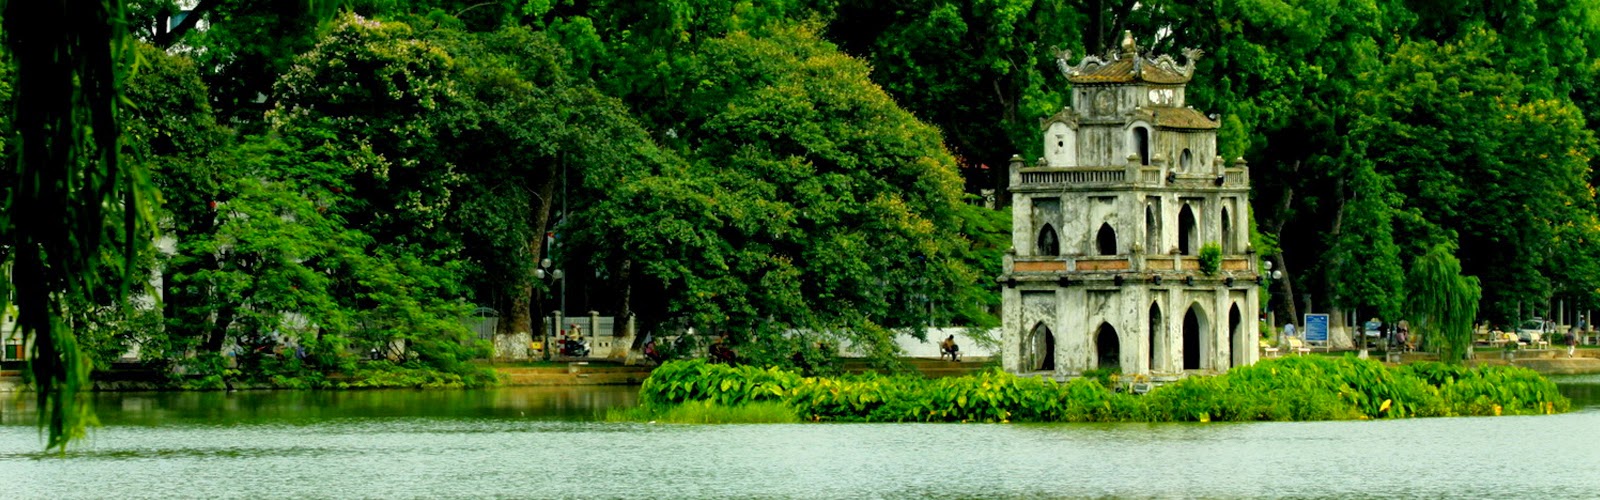 Hình ảnh Hồ Gươm tranh vẽ cầu Thê Húc